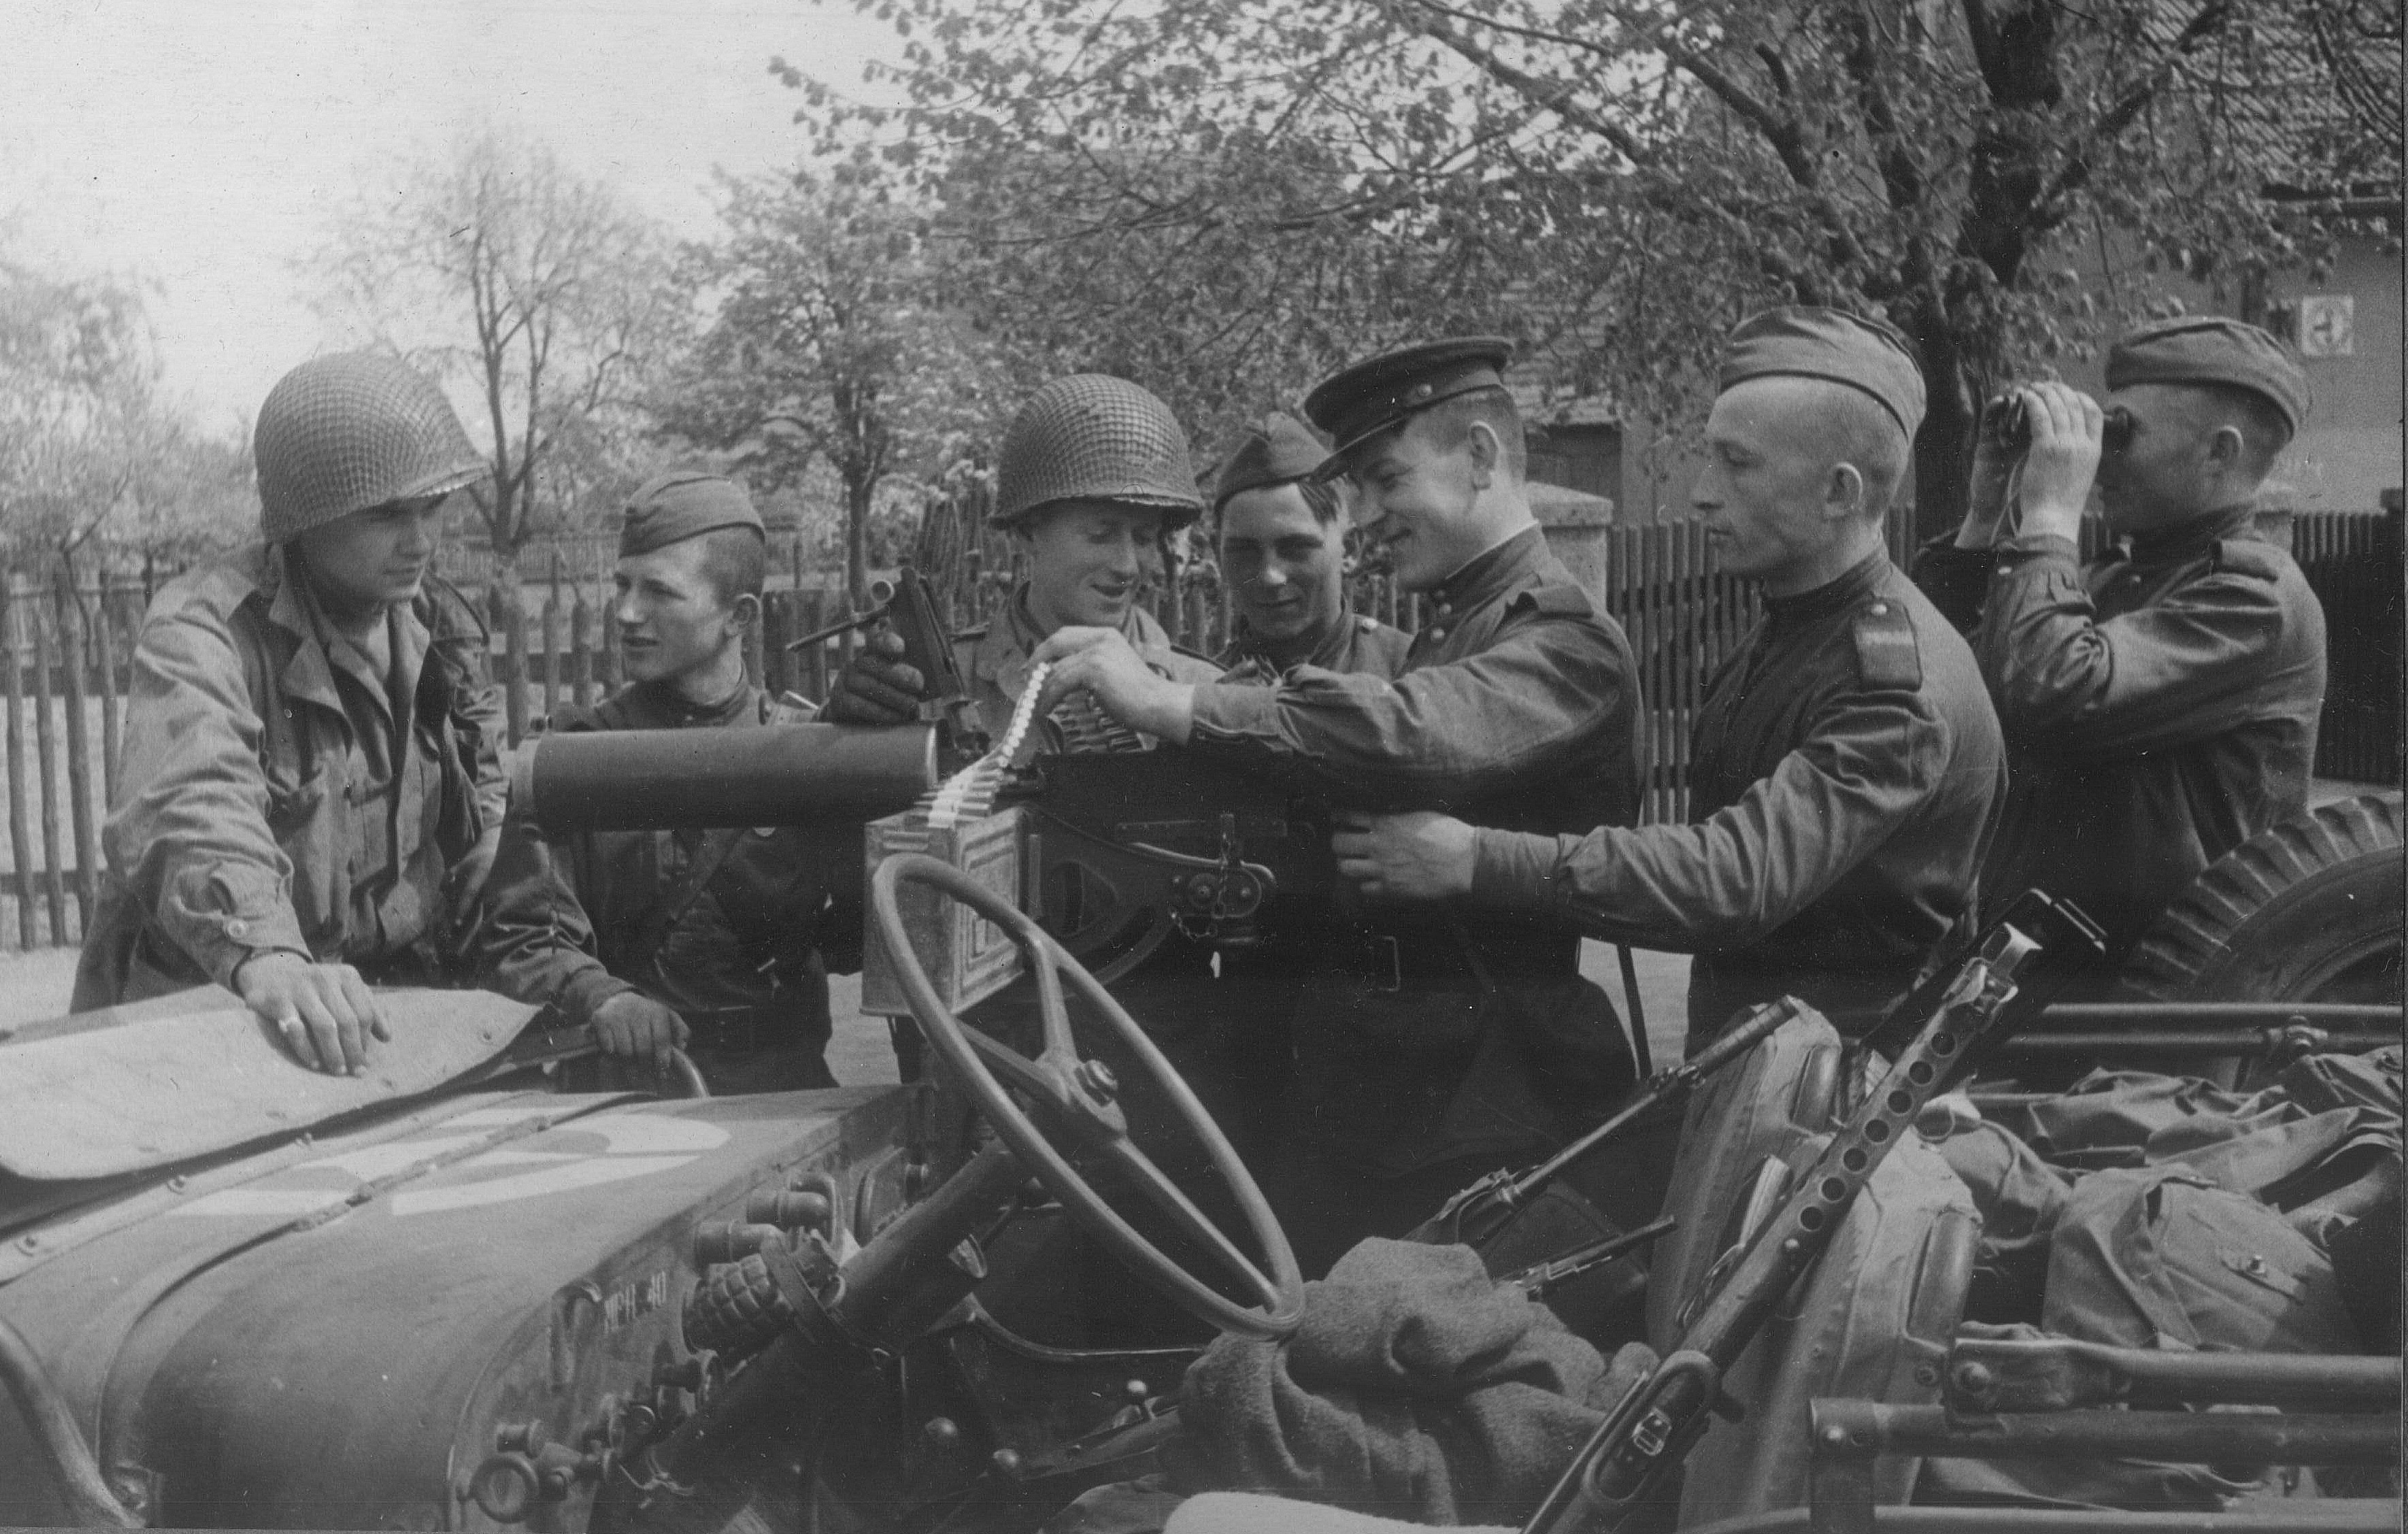 Военные фотографии хорошего качества. Советские солдаты на войне 1941-1945. Встреча на Эльбе 1945 год.